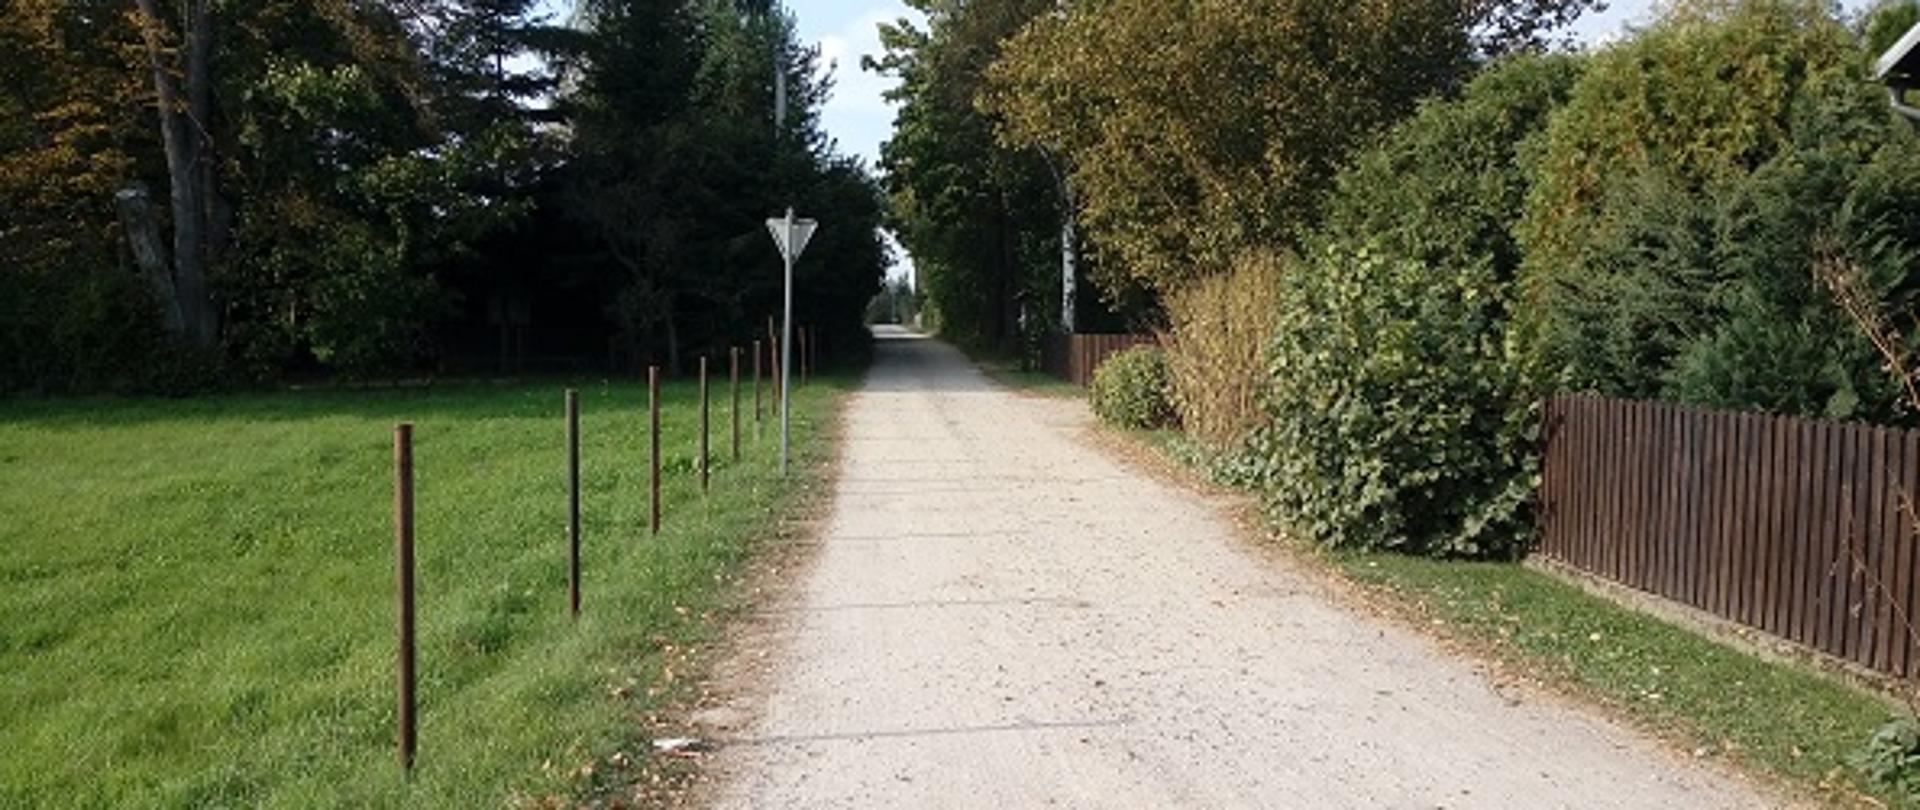 Na zdjęciu widoczna droga gruntowa w miejscowości Poręba Kocęby. Po lewej stronie drogi znajduje się łąka. Po prawej stronie widać zabudowania oraz płoty ogradzające posesję.